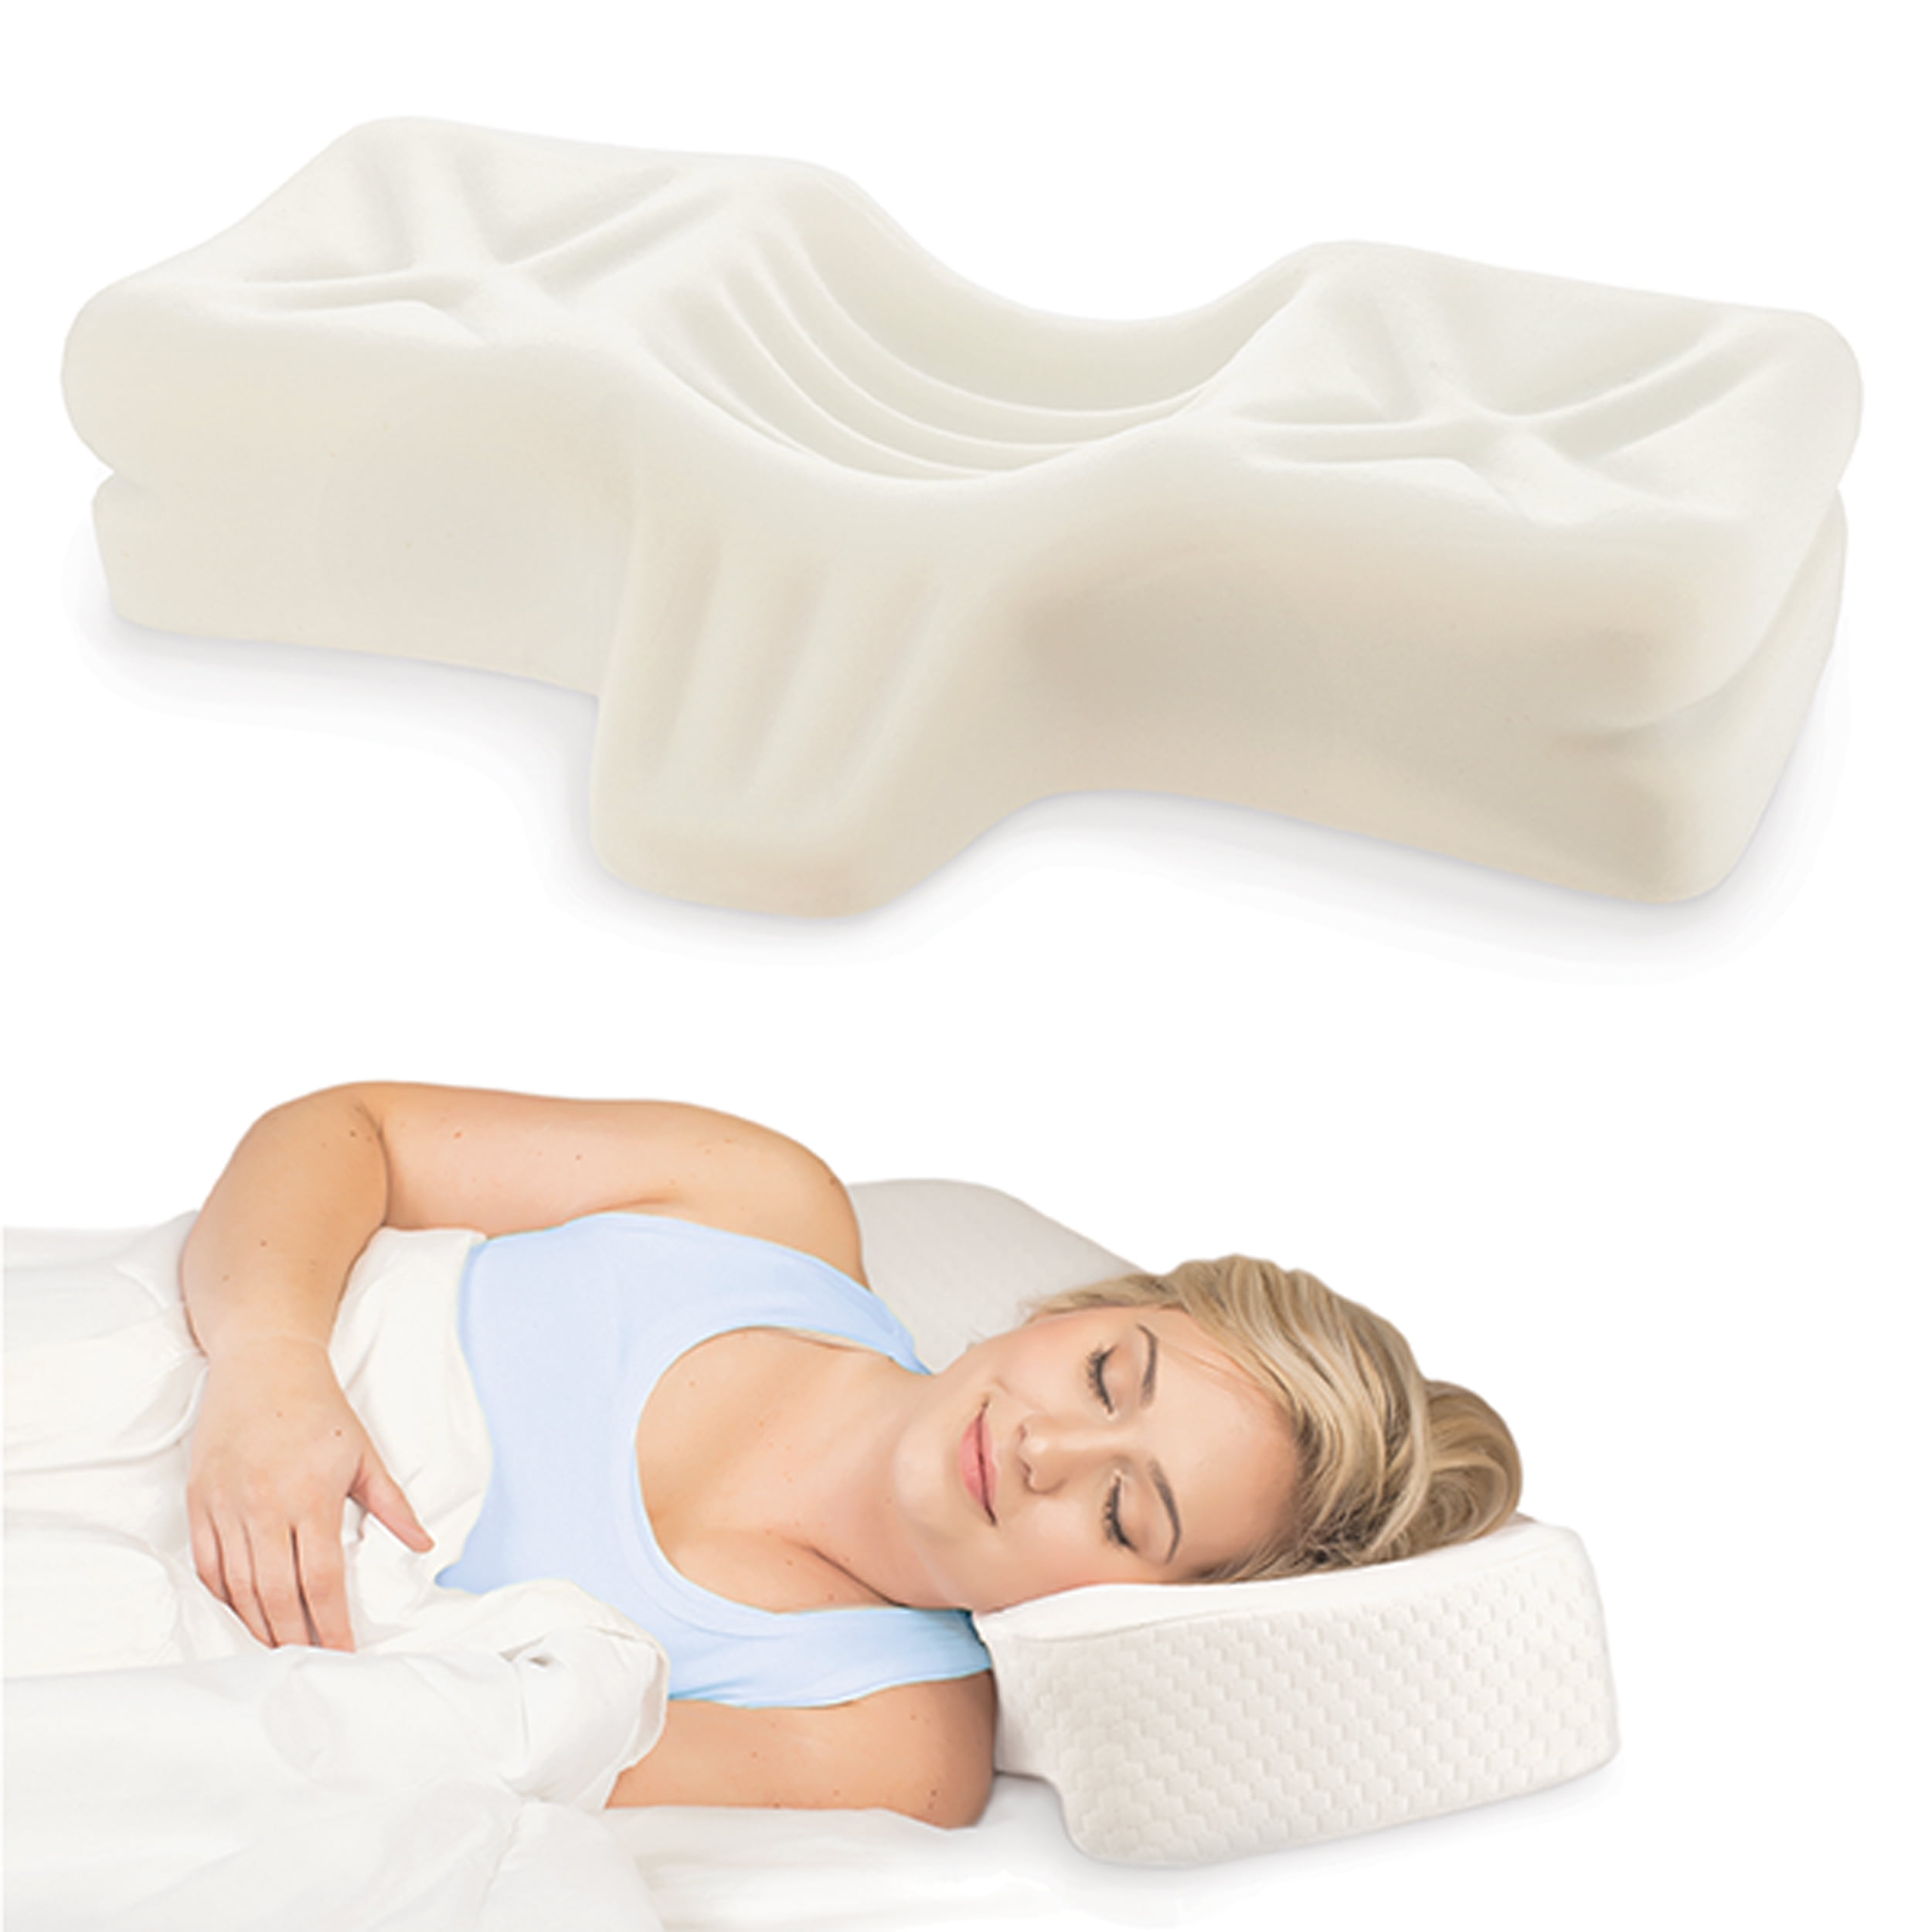 Qi Orthopedic Pillow™ - Lumbar Back Posture Pain Relief - Buy Online –  Ajuvia / Perspectis, Inc.